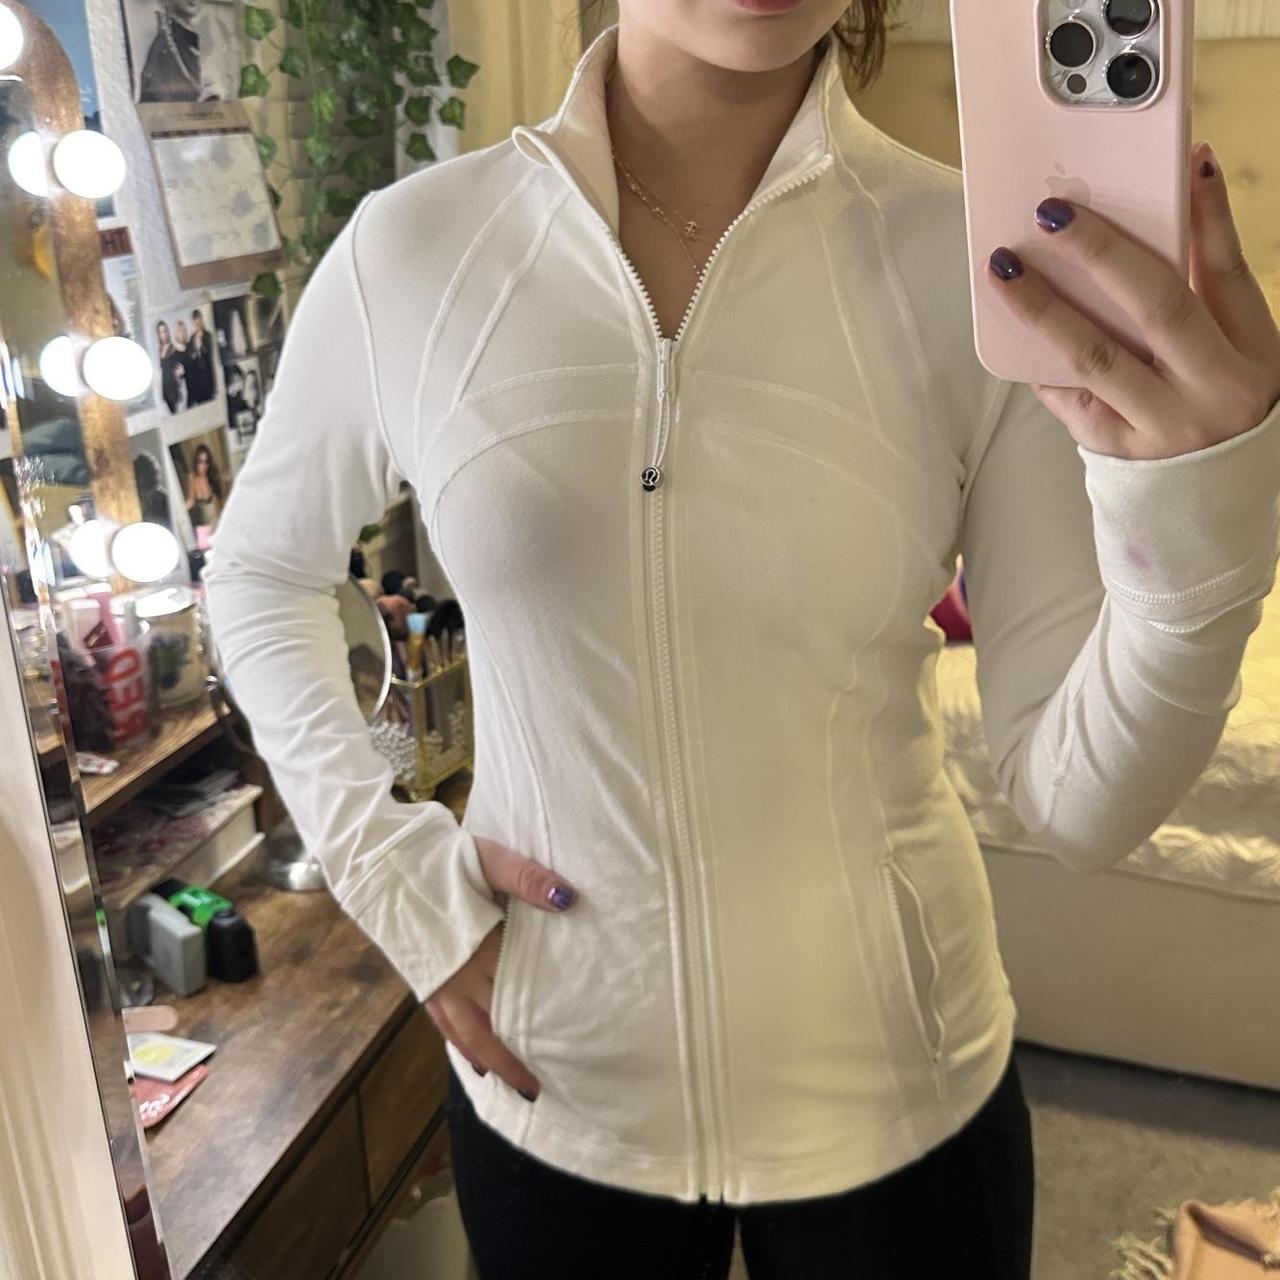 Lululemon Define jacket White Used Size 6/8 - Depop